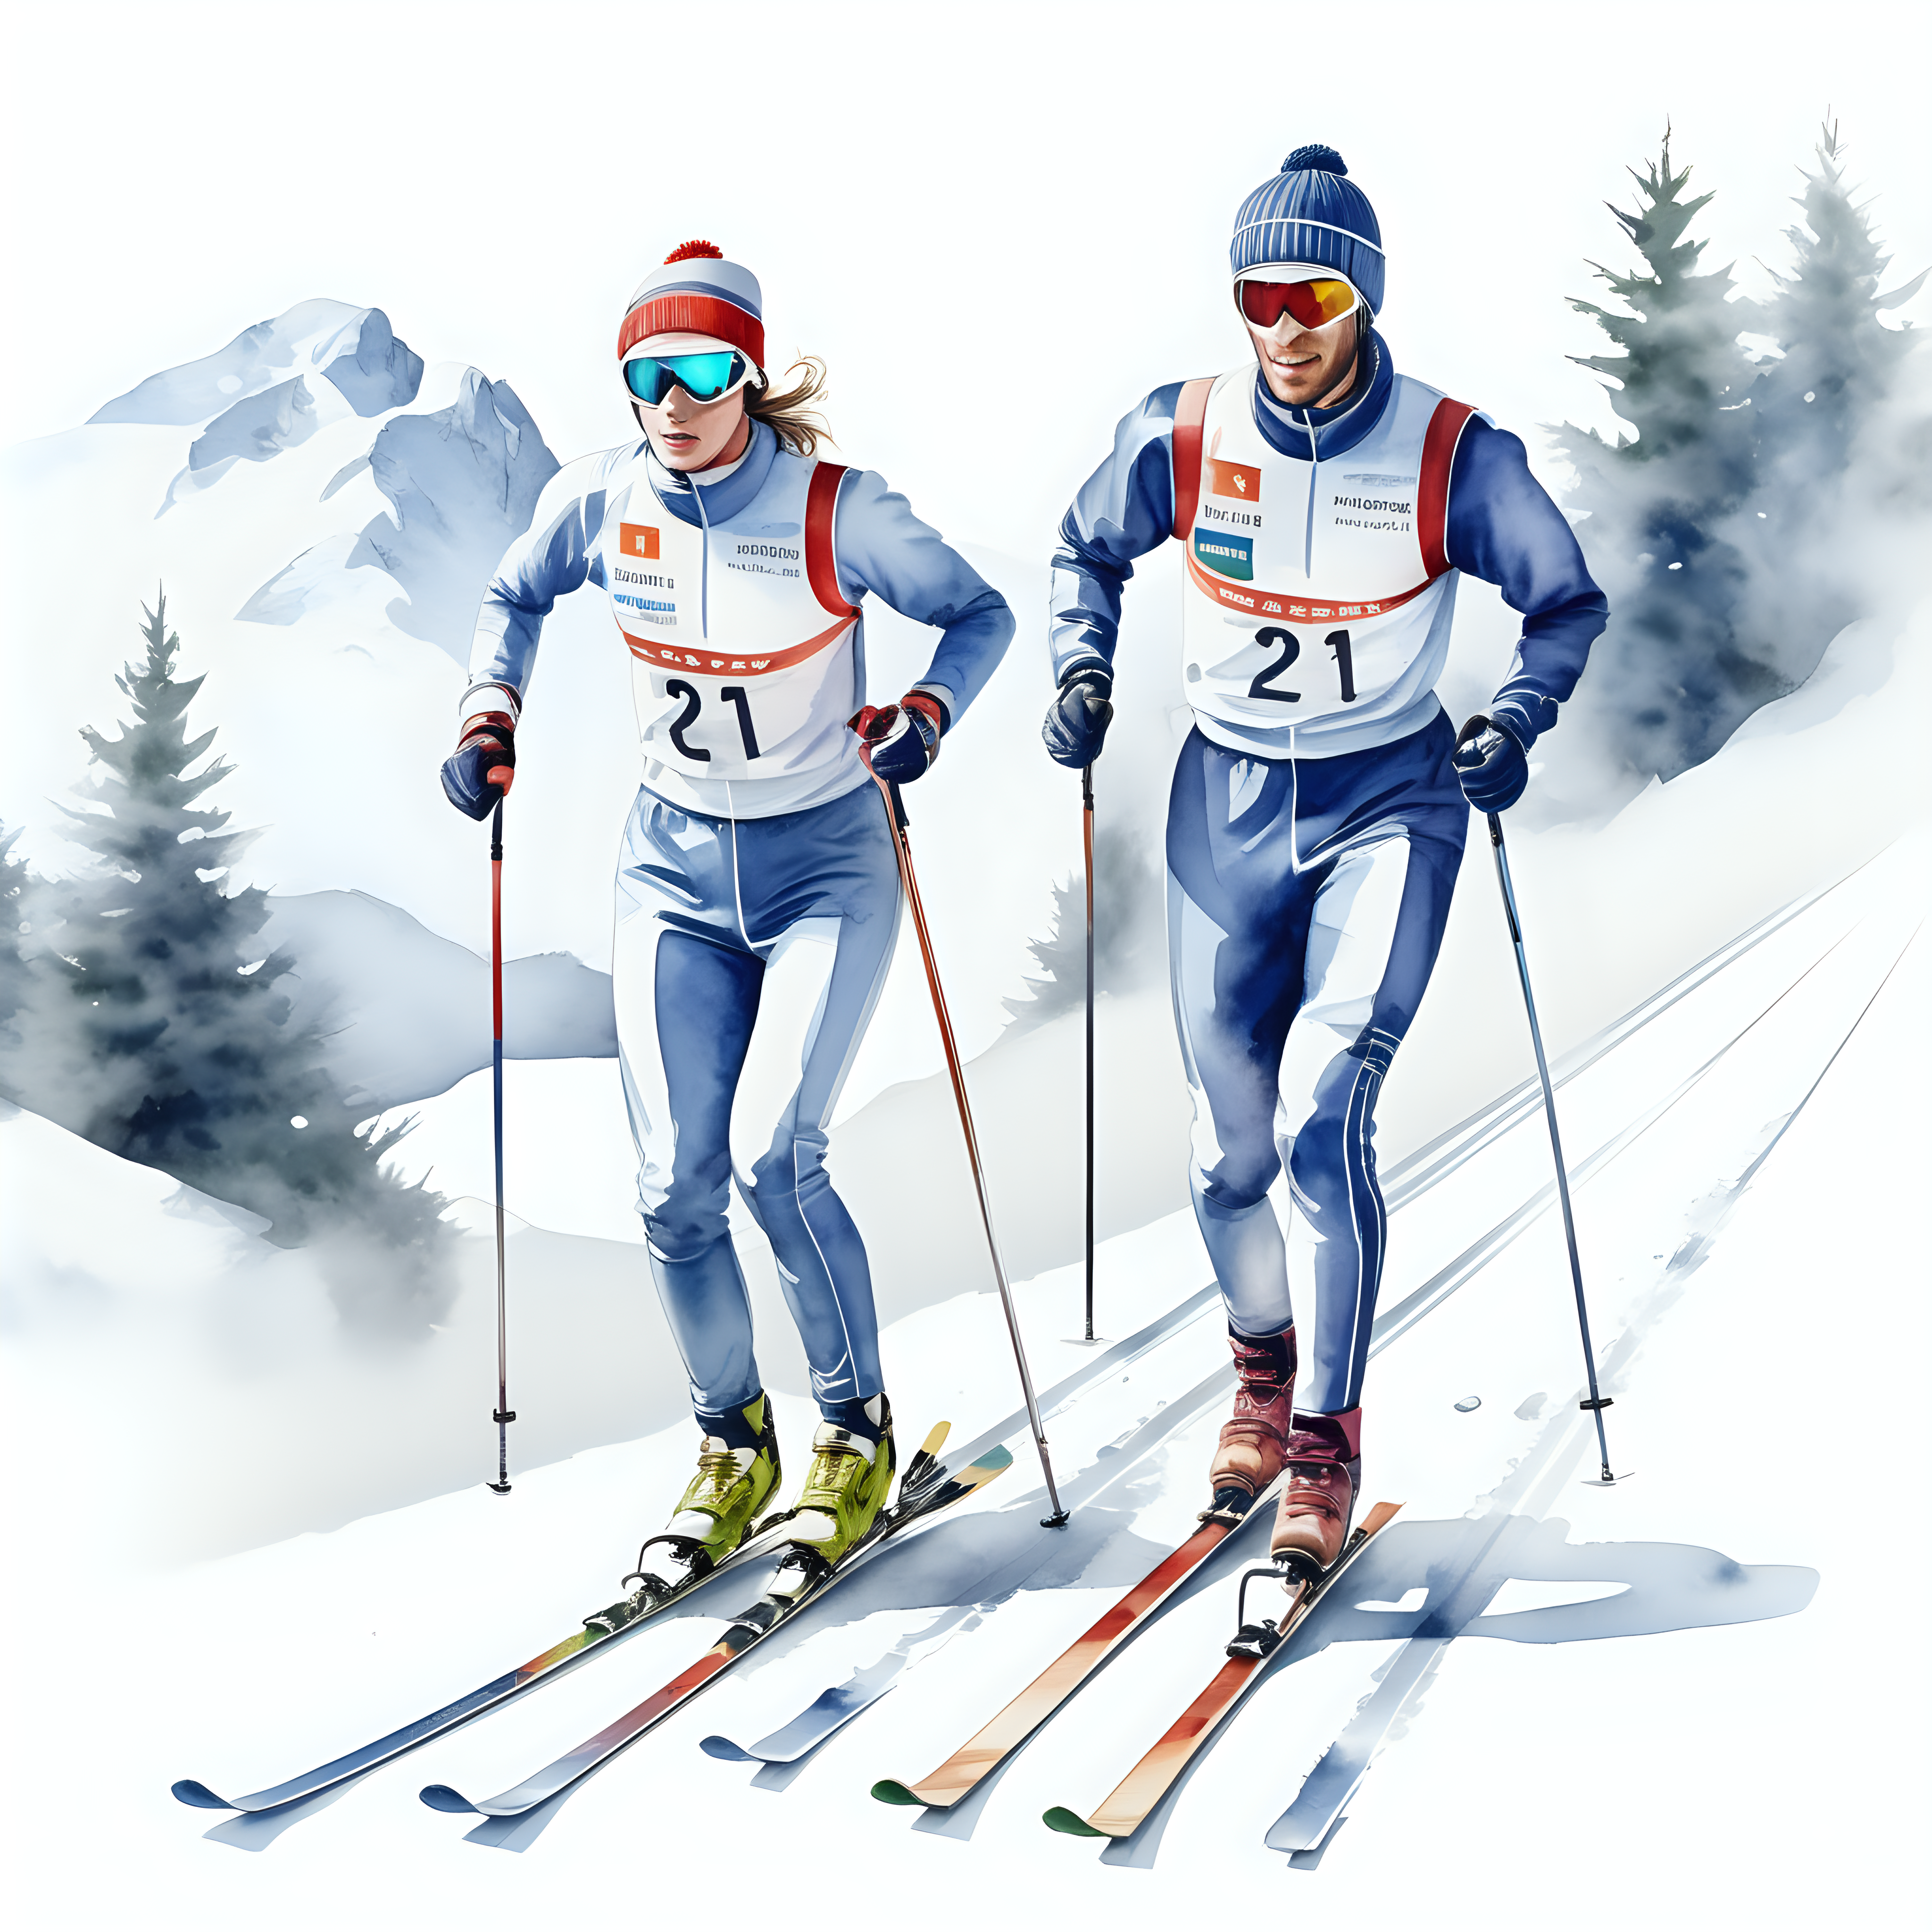 bílé pozadí_vytvoř realistickou ilustraci závodní oblečení_soutěž_dvou běžeckých lyžař na trati ve stylu akvarelu_ zimní bílá krajina